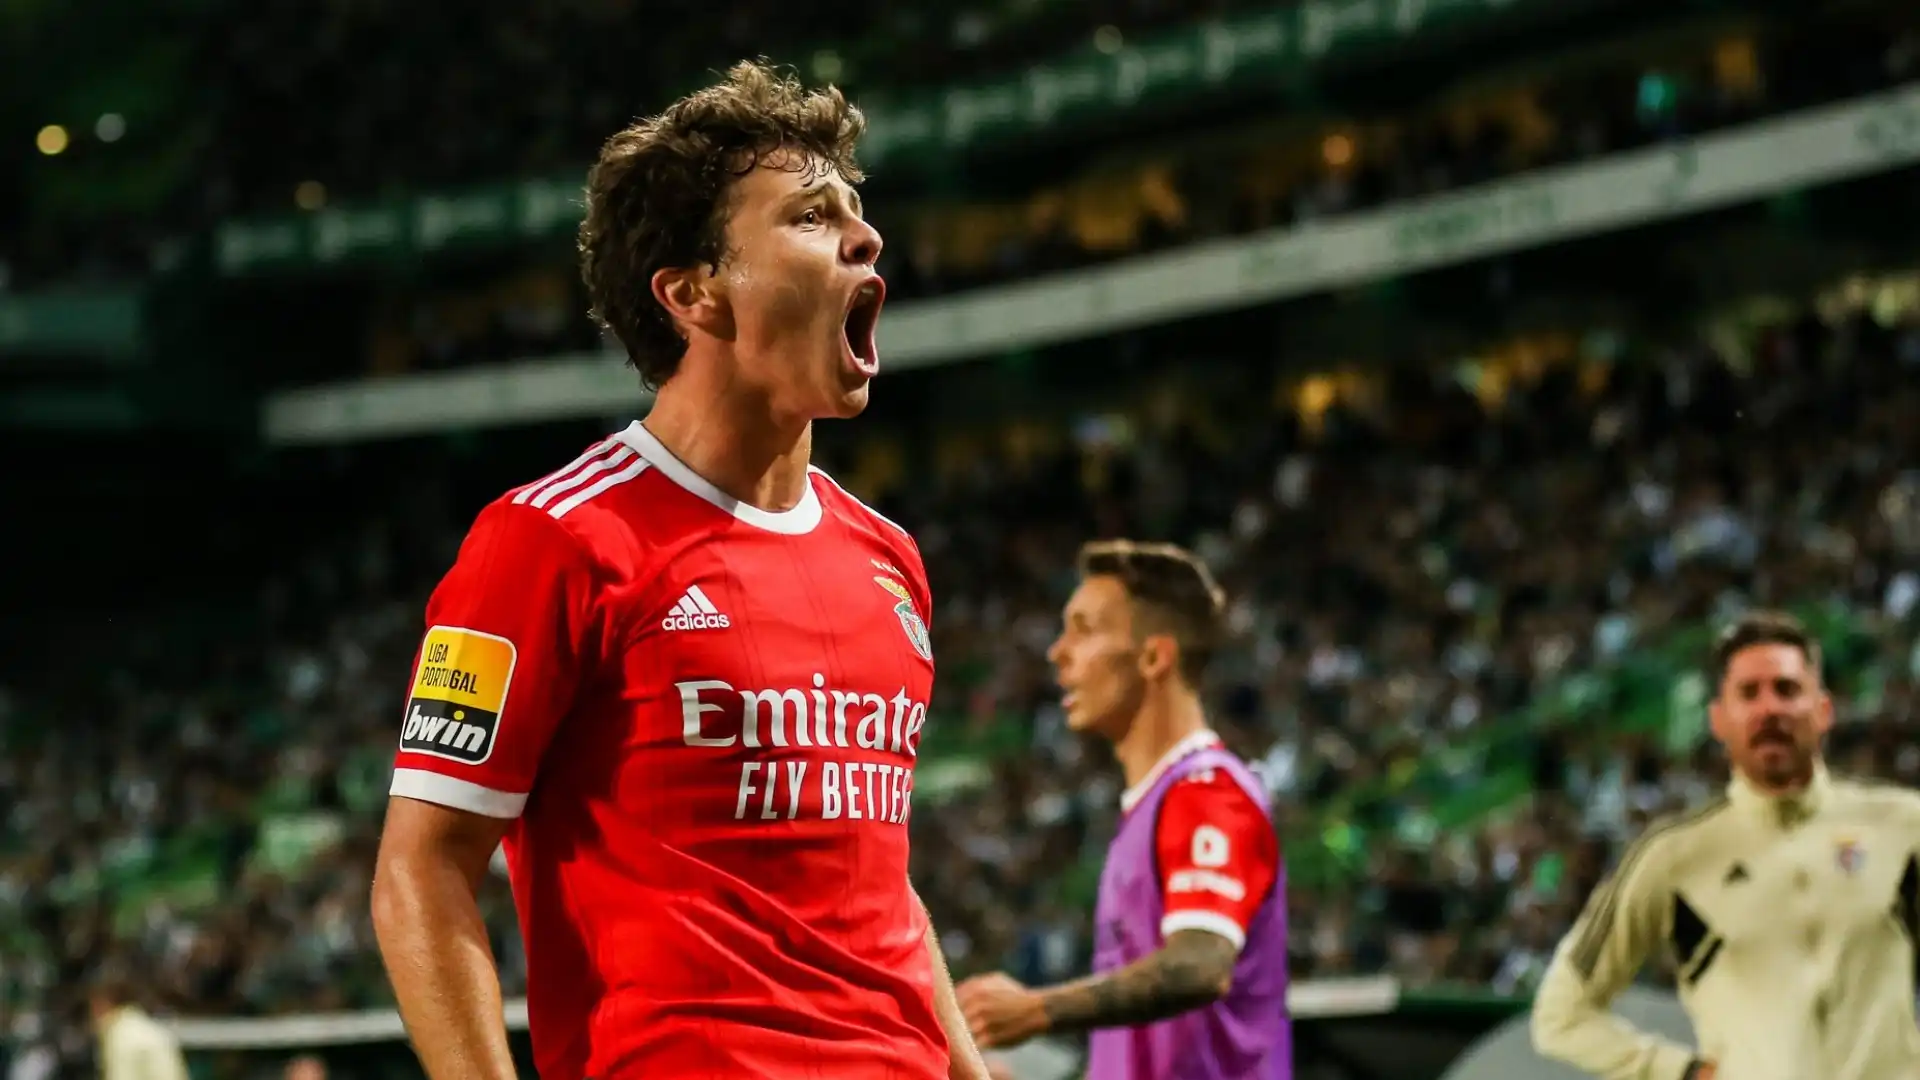 Diversi grandi club europei si sono messi sulle tracce del gioiello del Benfica